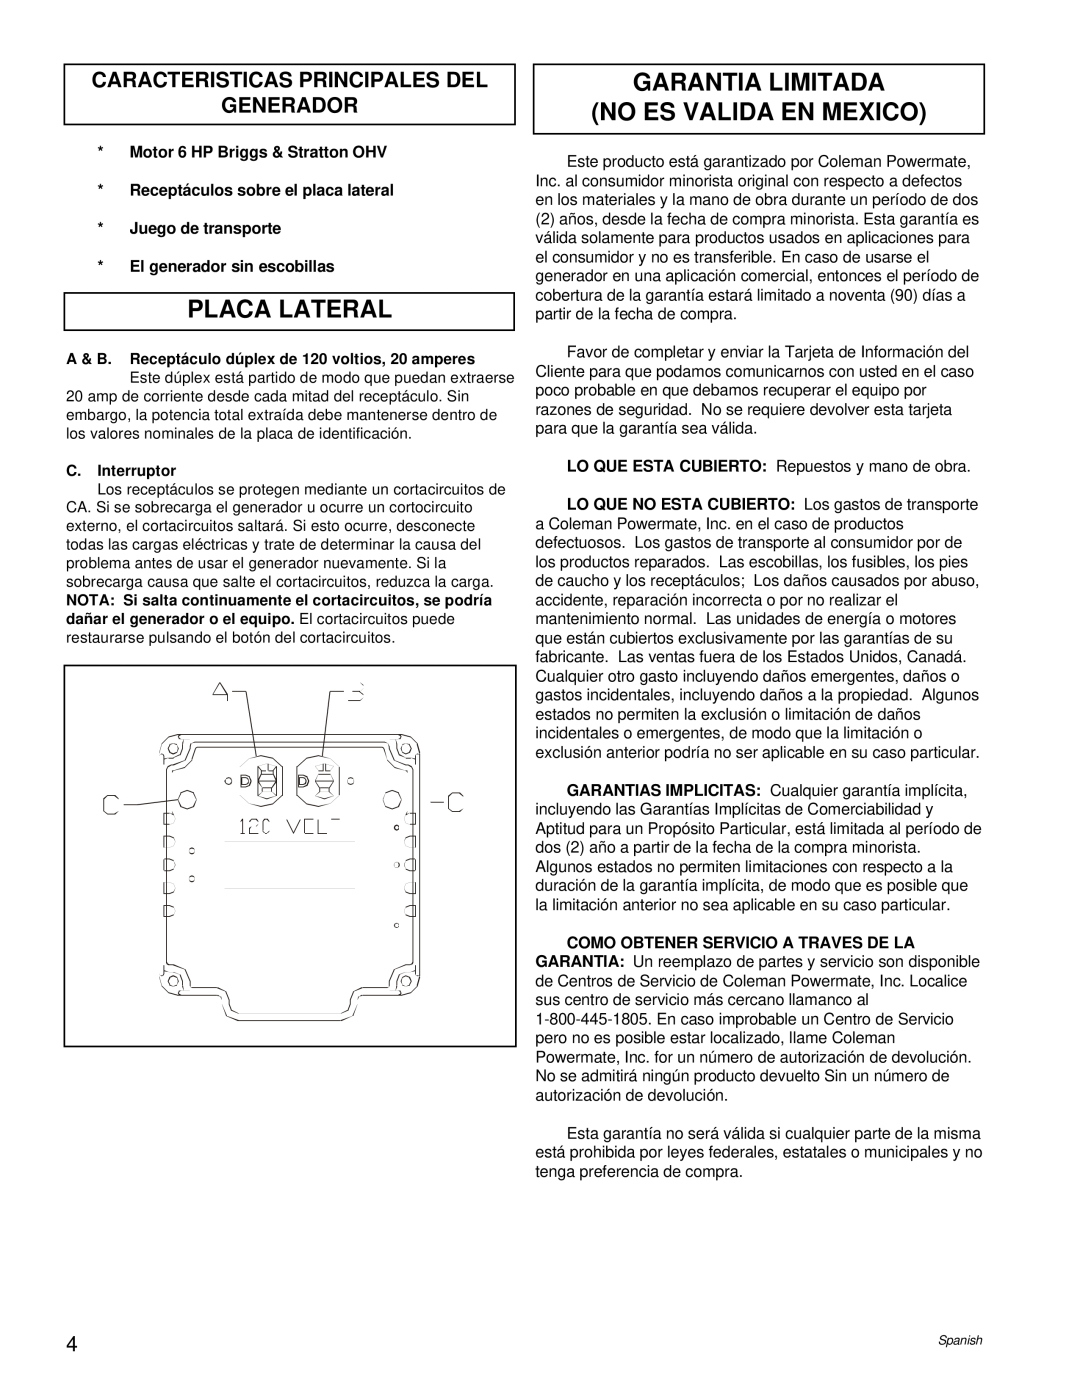 Powermate PC0543000.01 Placa Lateral, Garantia Limitada No Es Valida En Mexico, Caracteristicas Principales Del Generador 